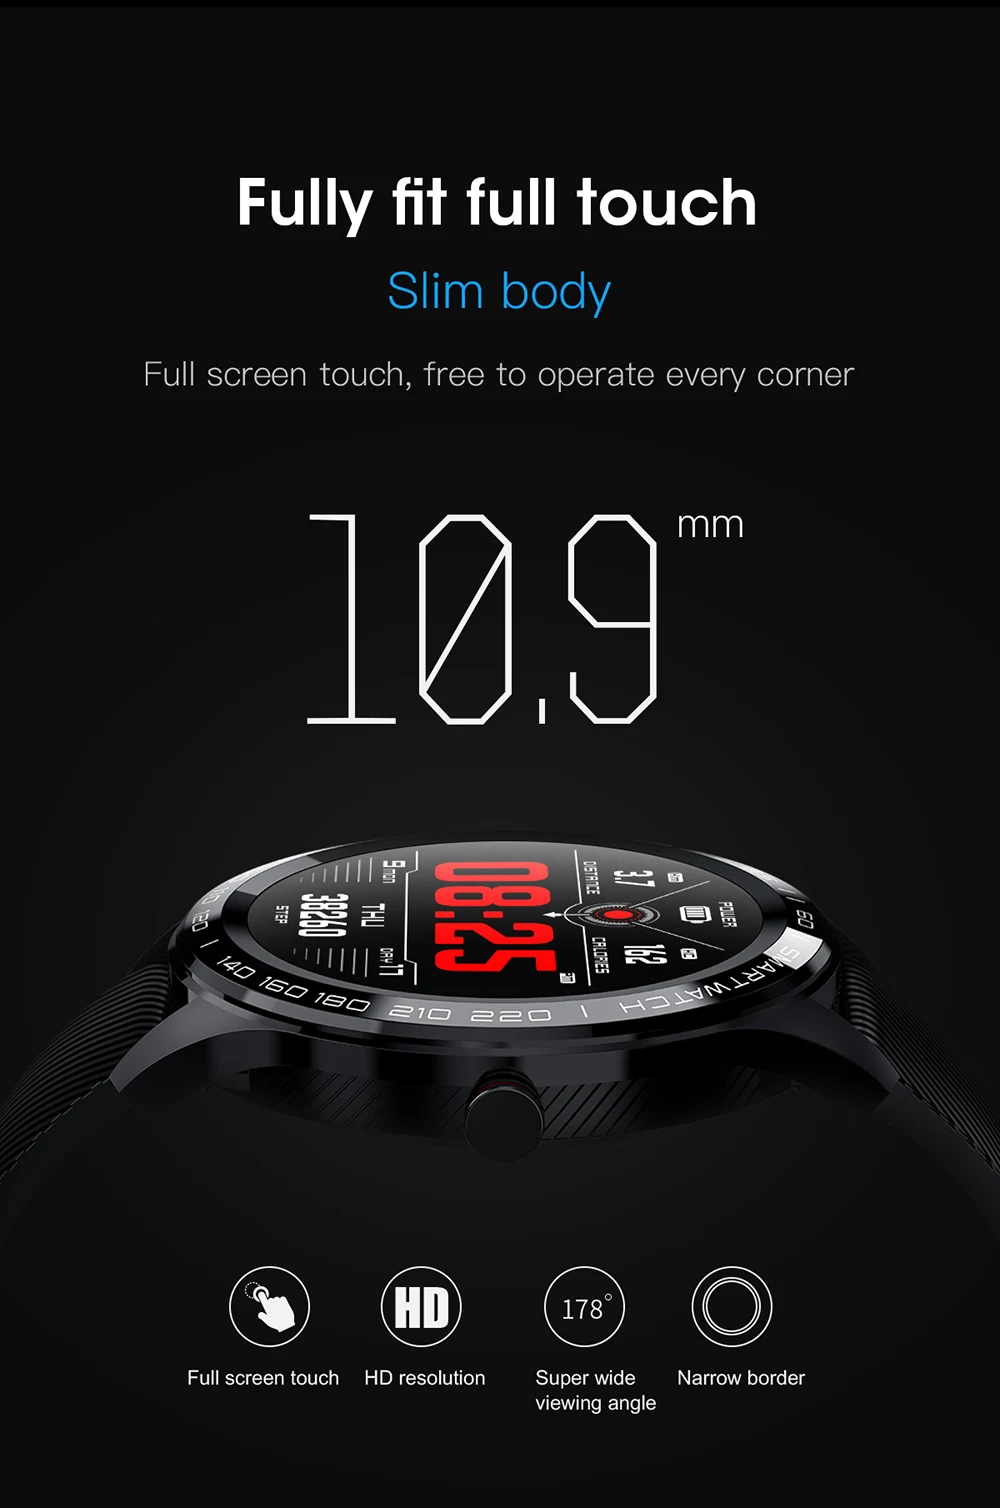 L9 Смарт часы для мужчин IP68 Водонепроницаемый несколько спортивных ЭКГ PPG сердечного ритма Bluetooth Smartwatch кровяное давление кислорода VS L5 L7